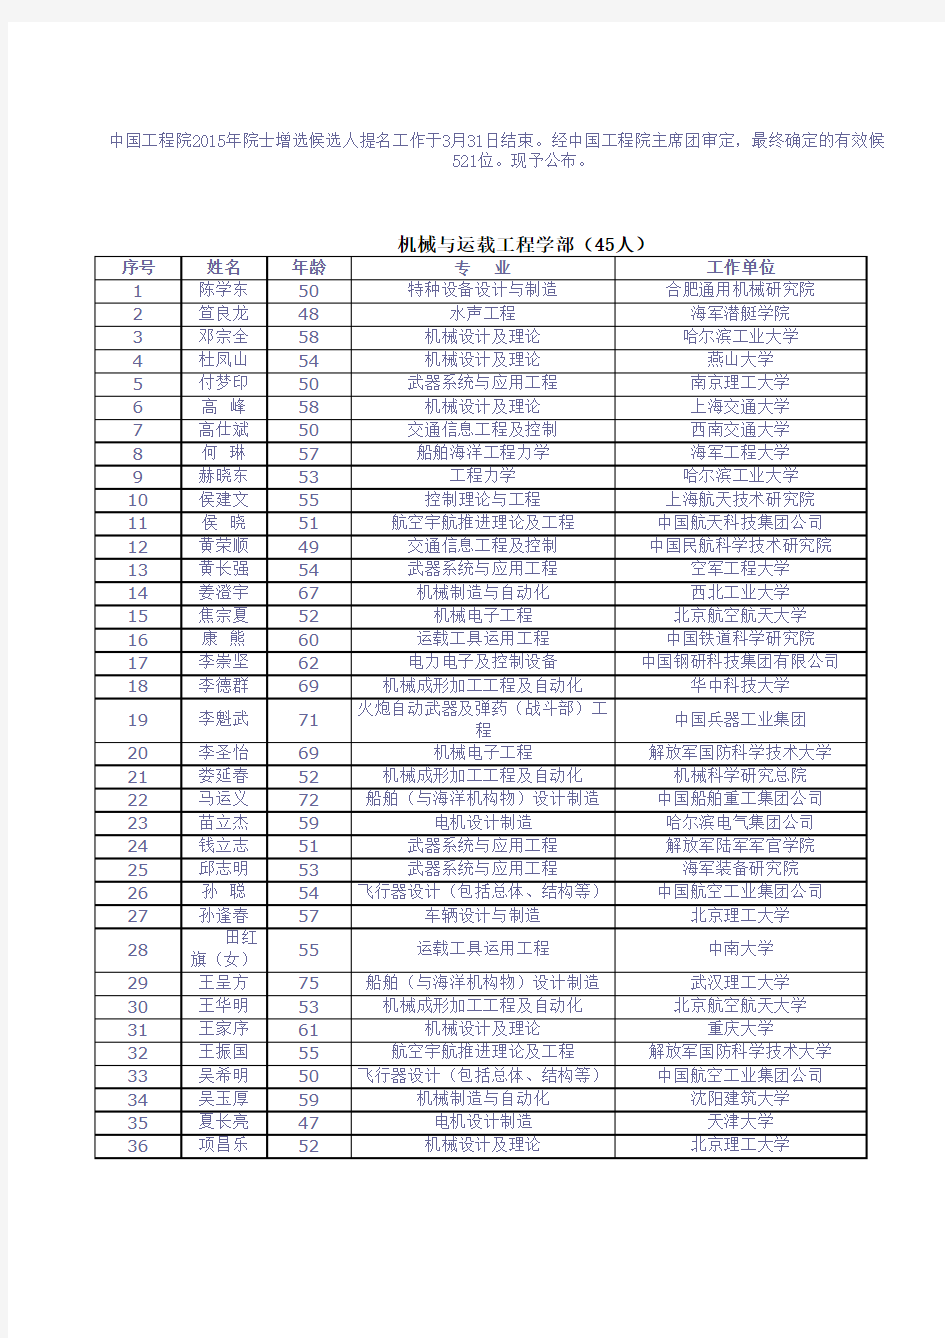 2015年中国工程院院士新增候选人名单